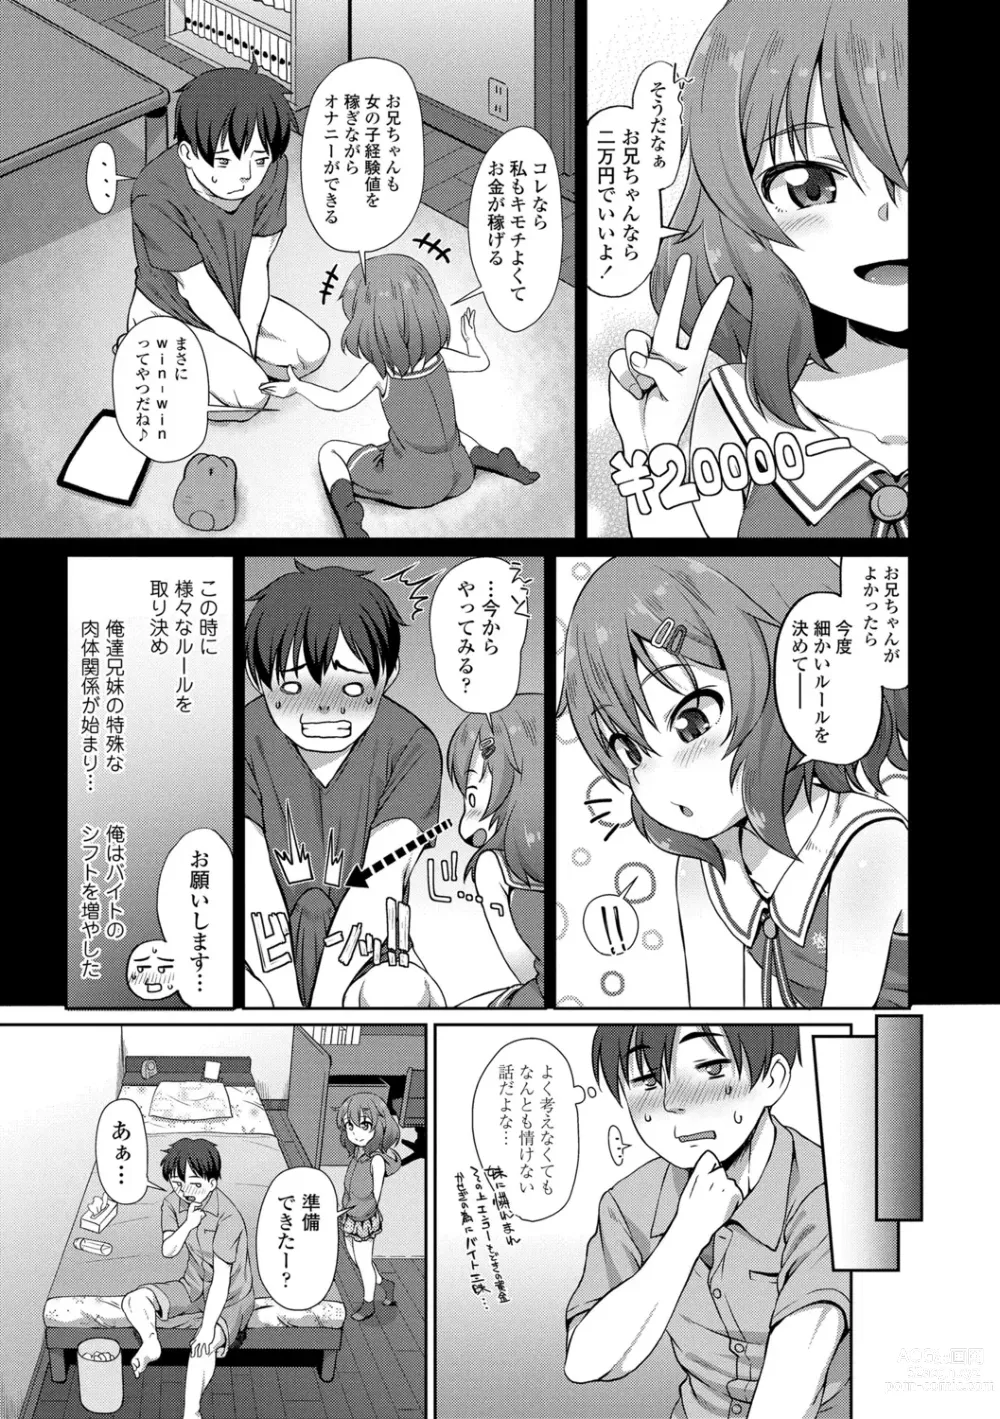 Page 7 of manga Chiisai Ana wa Dou desu ka?